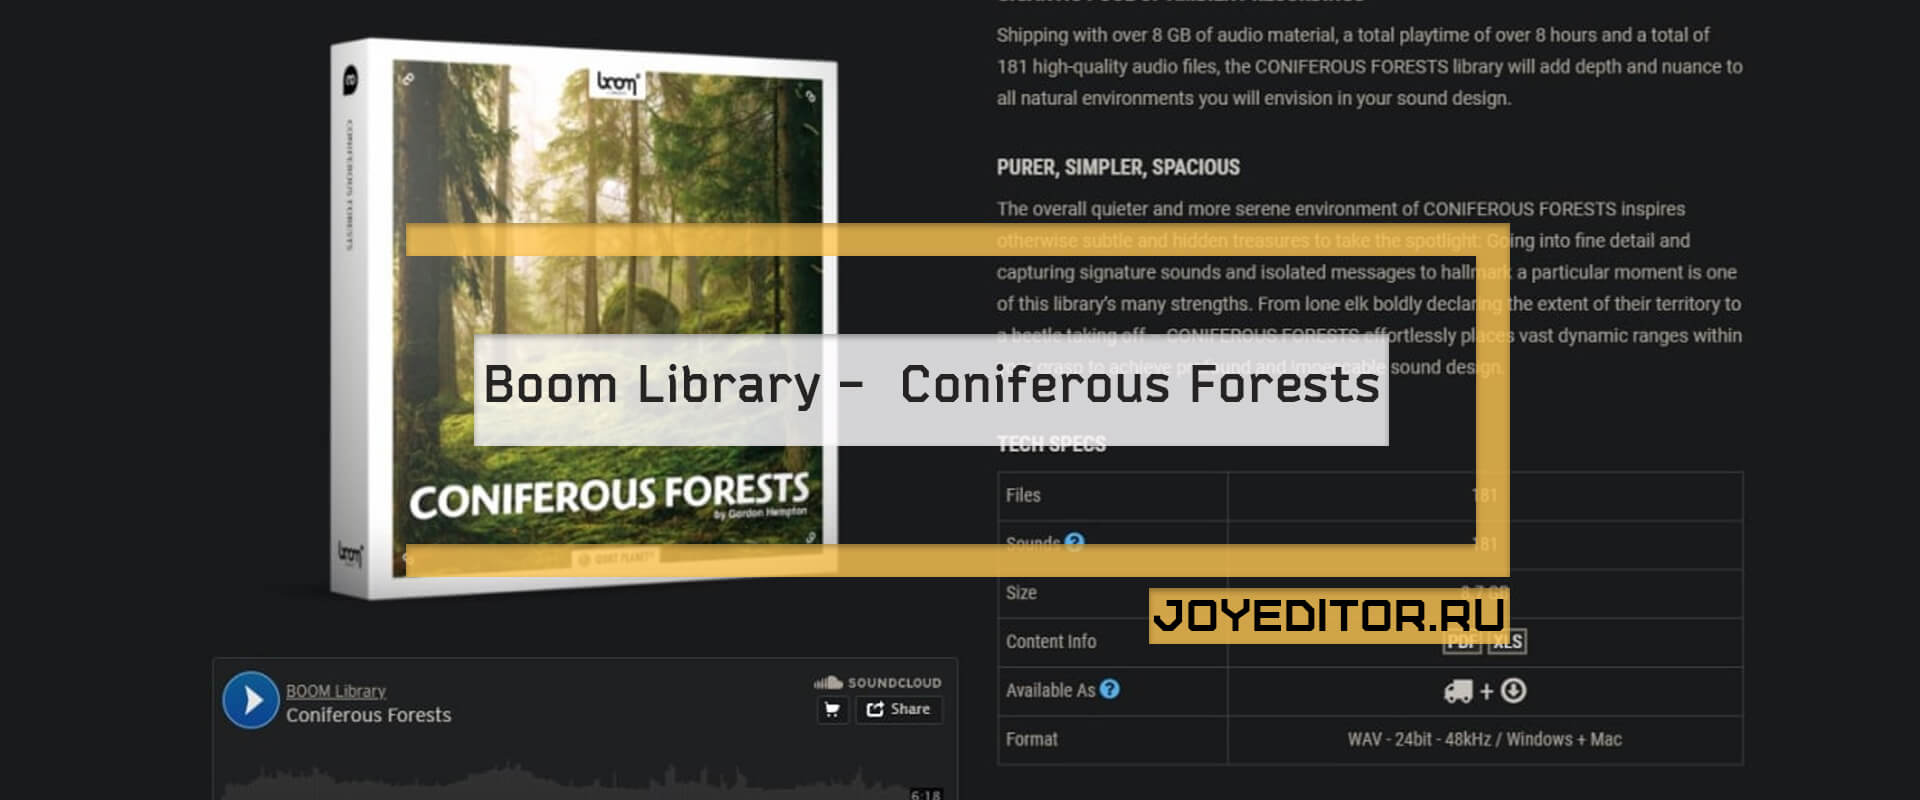 Boom Library - Coniferous Forests - Массивные хвойные деревья, возвышающиеся на неисчислимые высоты, образующие одни из самых величественных природных соборов, которые может предложить эта планета, создают звуковую атмосферу, столь же удивительную, как и лес.